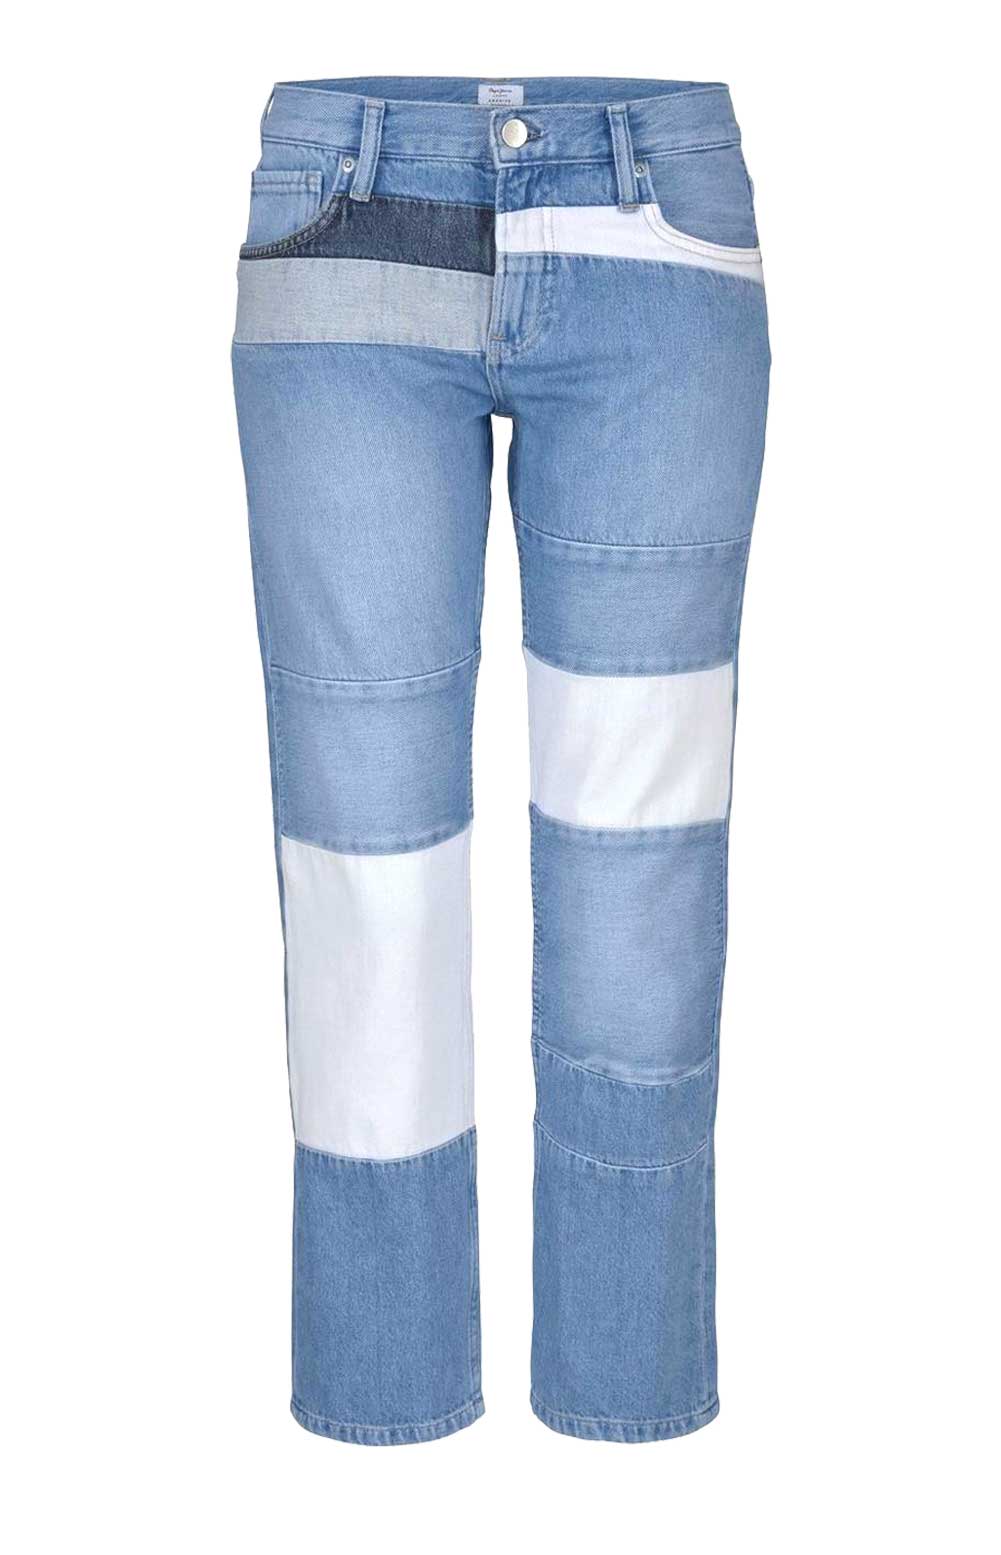 Pepe Jeans Damen Marken-Jeans, hellblau, 32 inch